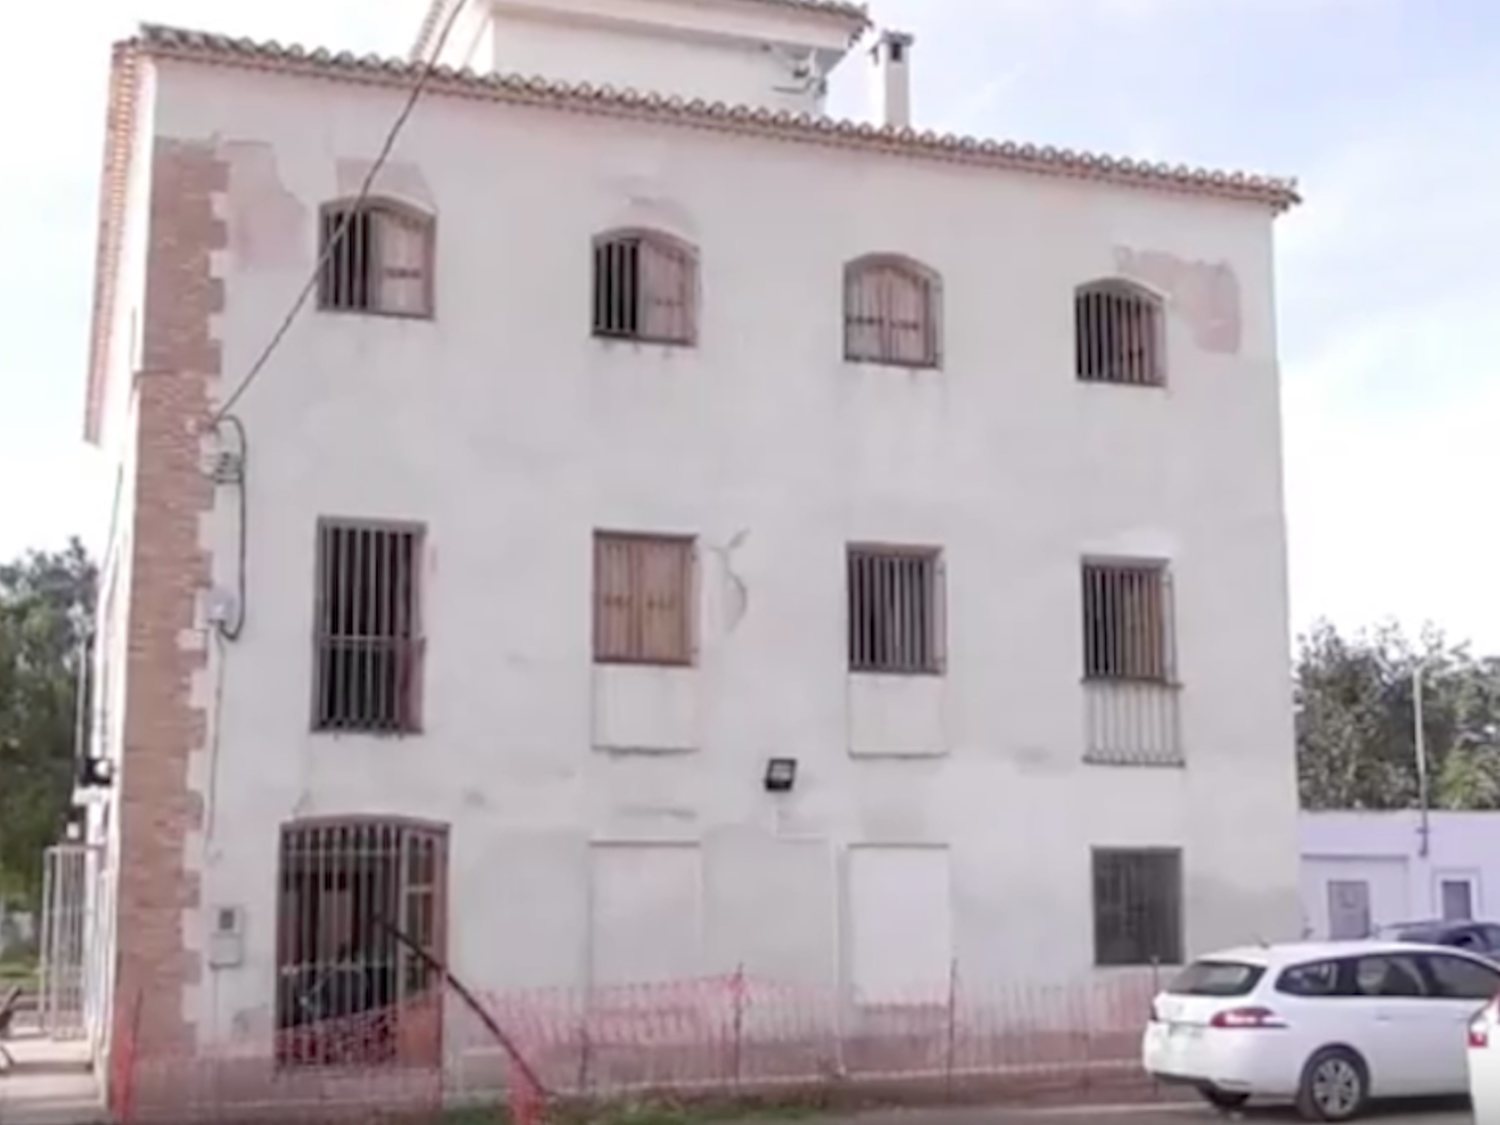 Colocan un artefacto explosivo simulado en un centro de MENAs en Alhama de Murcia